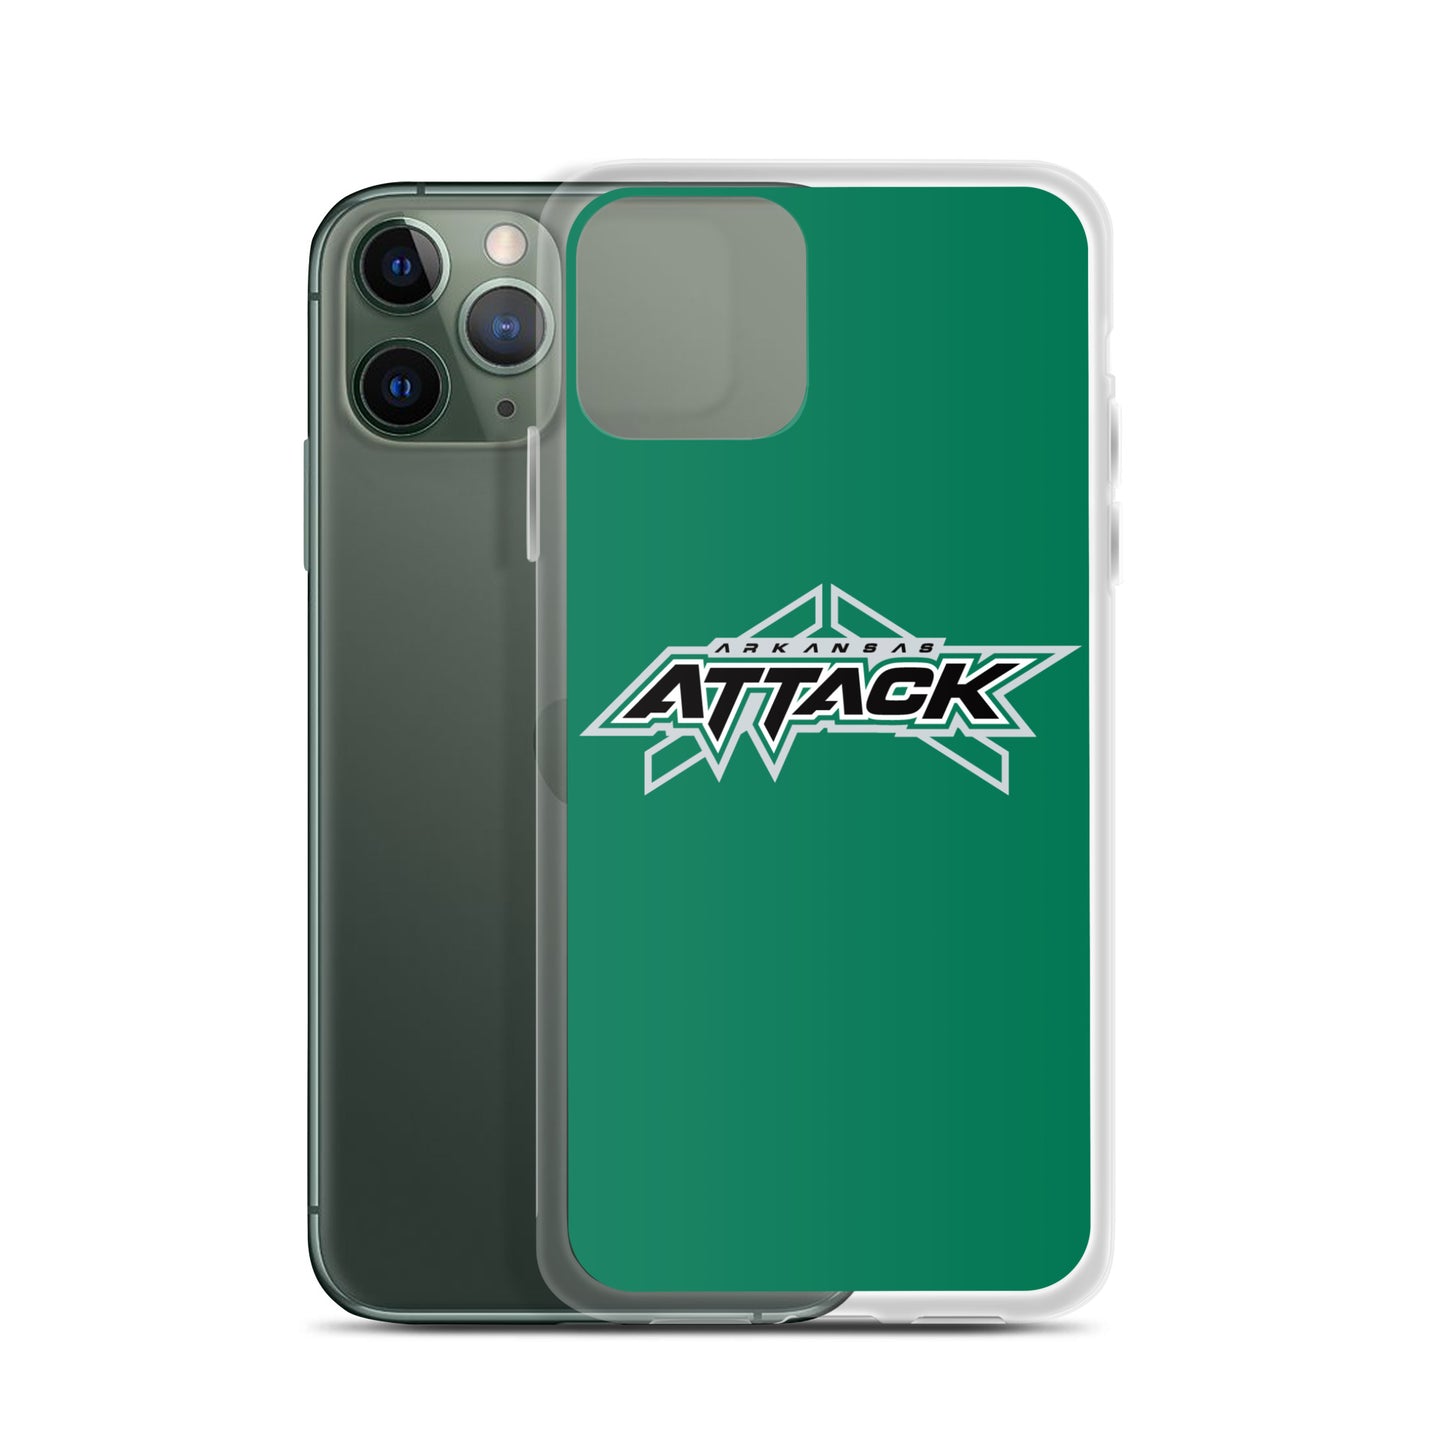 Attack iPhone Case